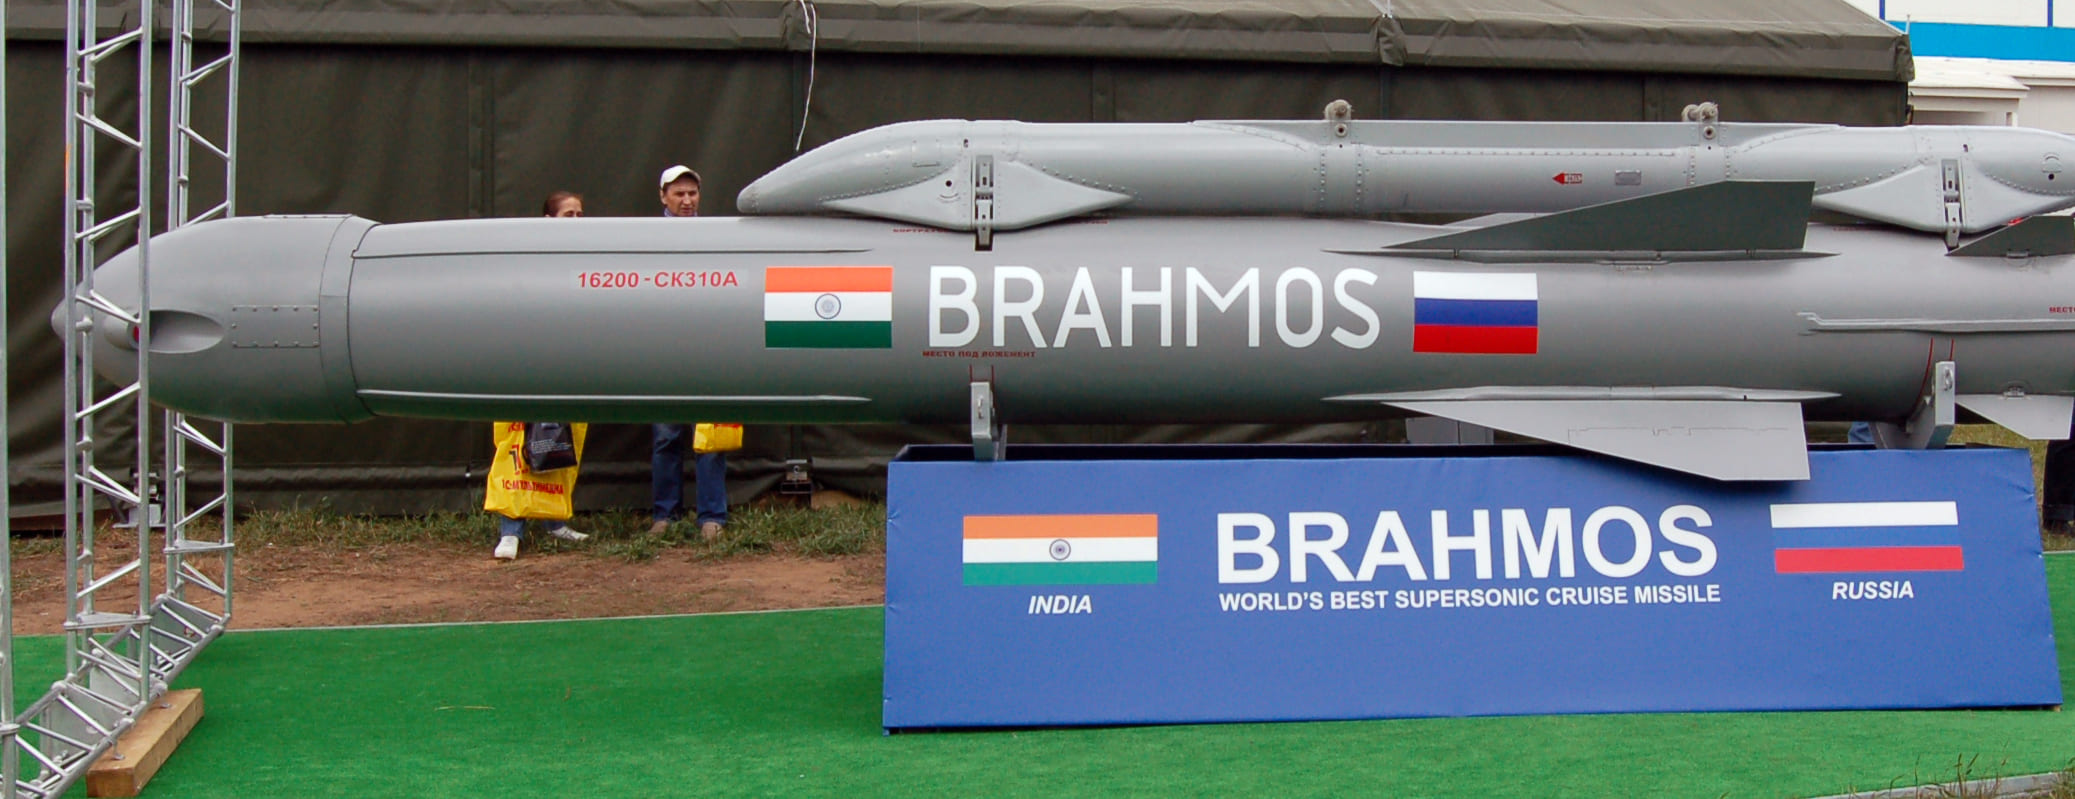 Адмирал Кумар: Российско-индийская ракета BrahMos поменяла правила игры в Южной Азии